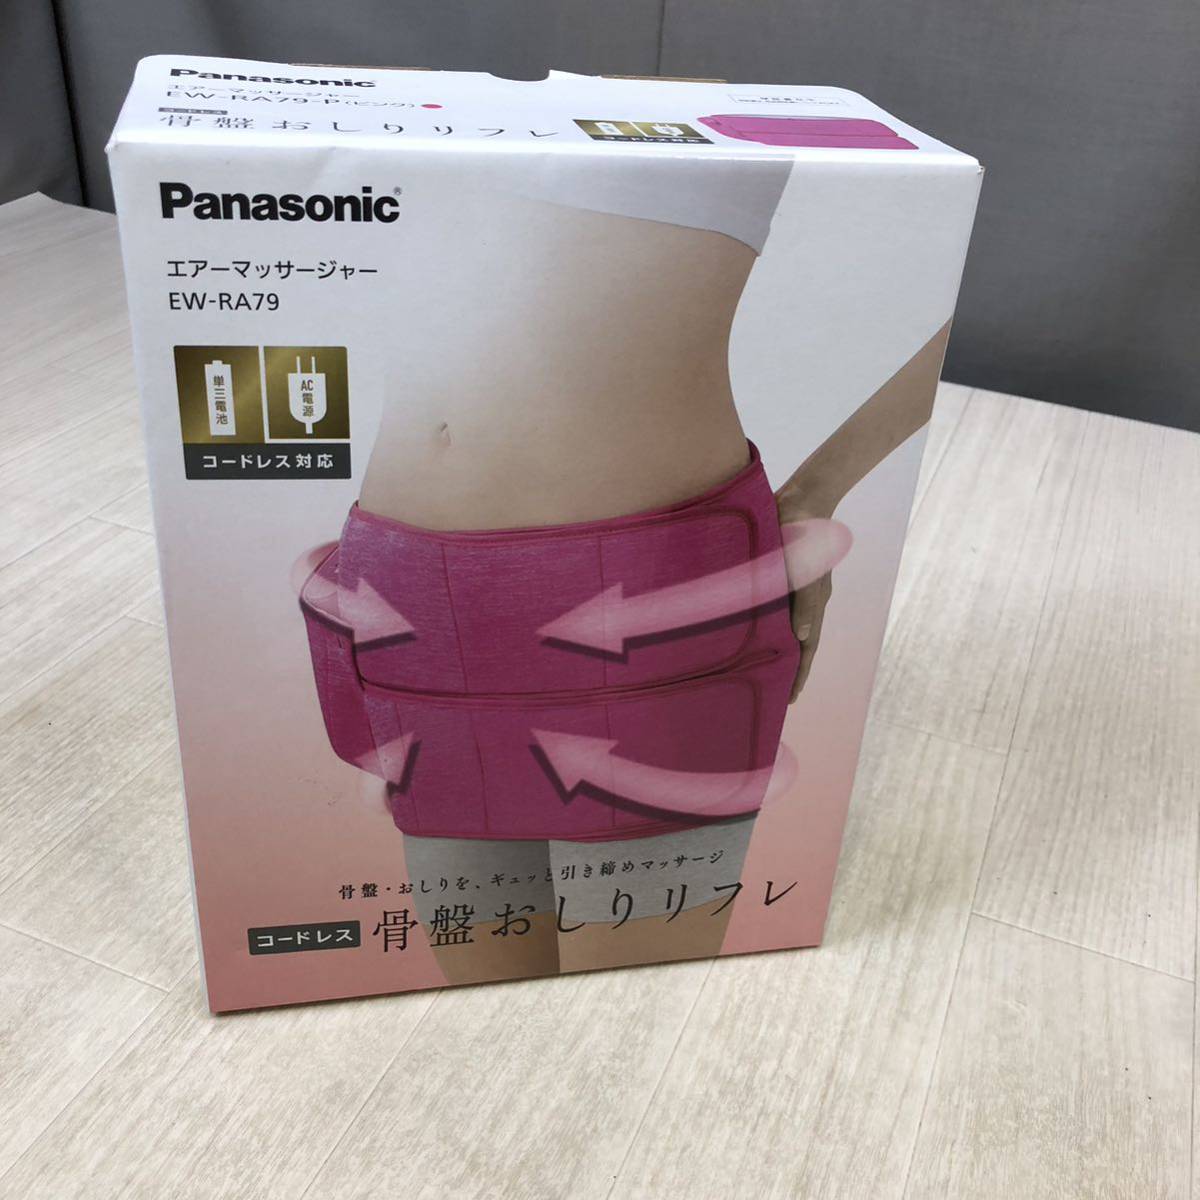 O328】Panasonic パナソニック 骨盤おしりリフレ エアーマッサージャー